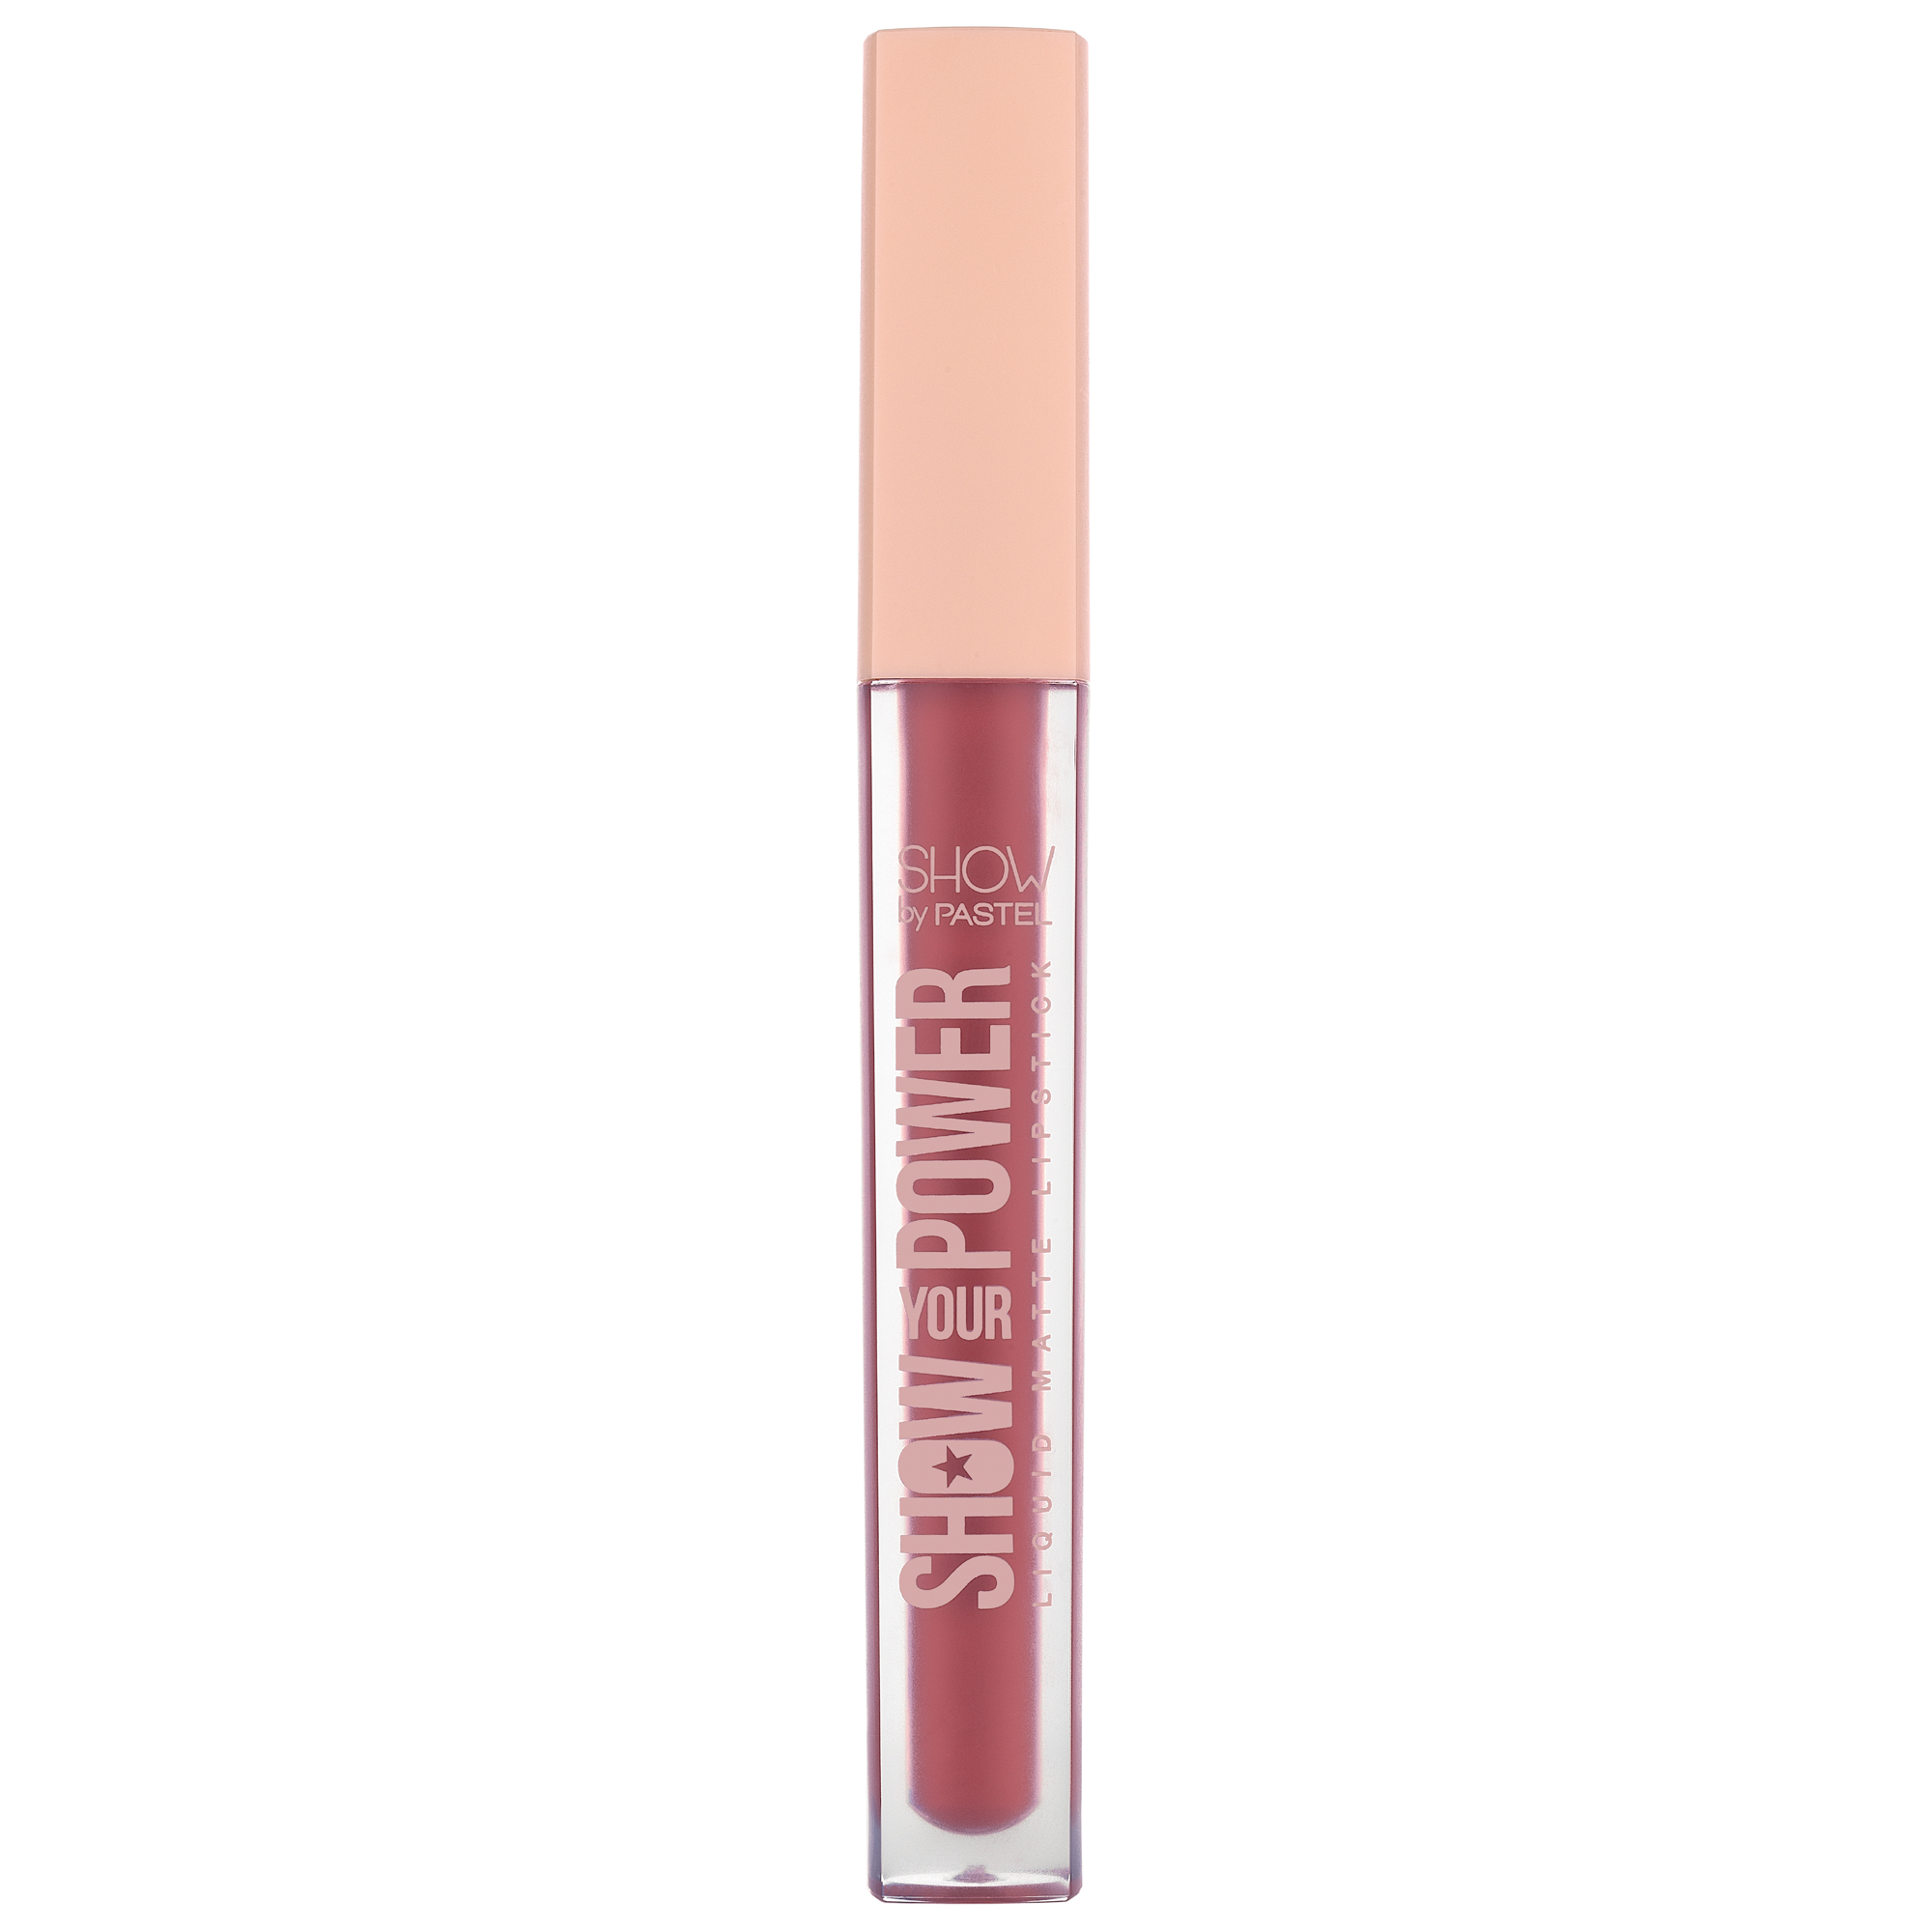 Pastel Show Your Power Liquid Matte Lipstick 605